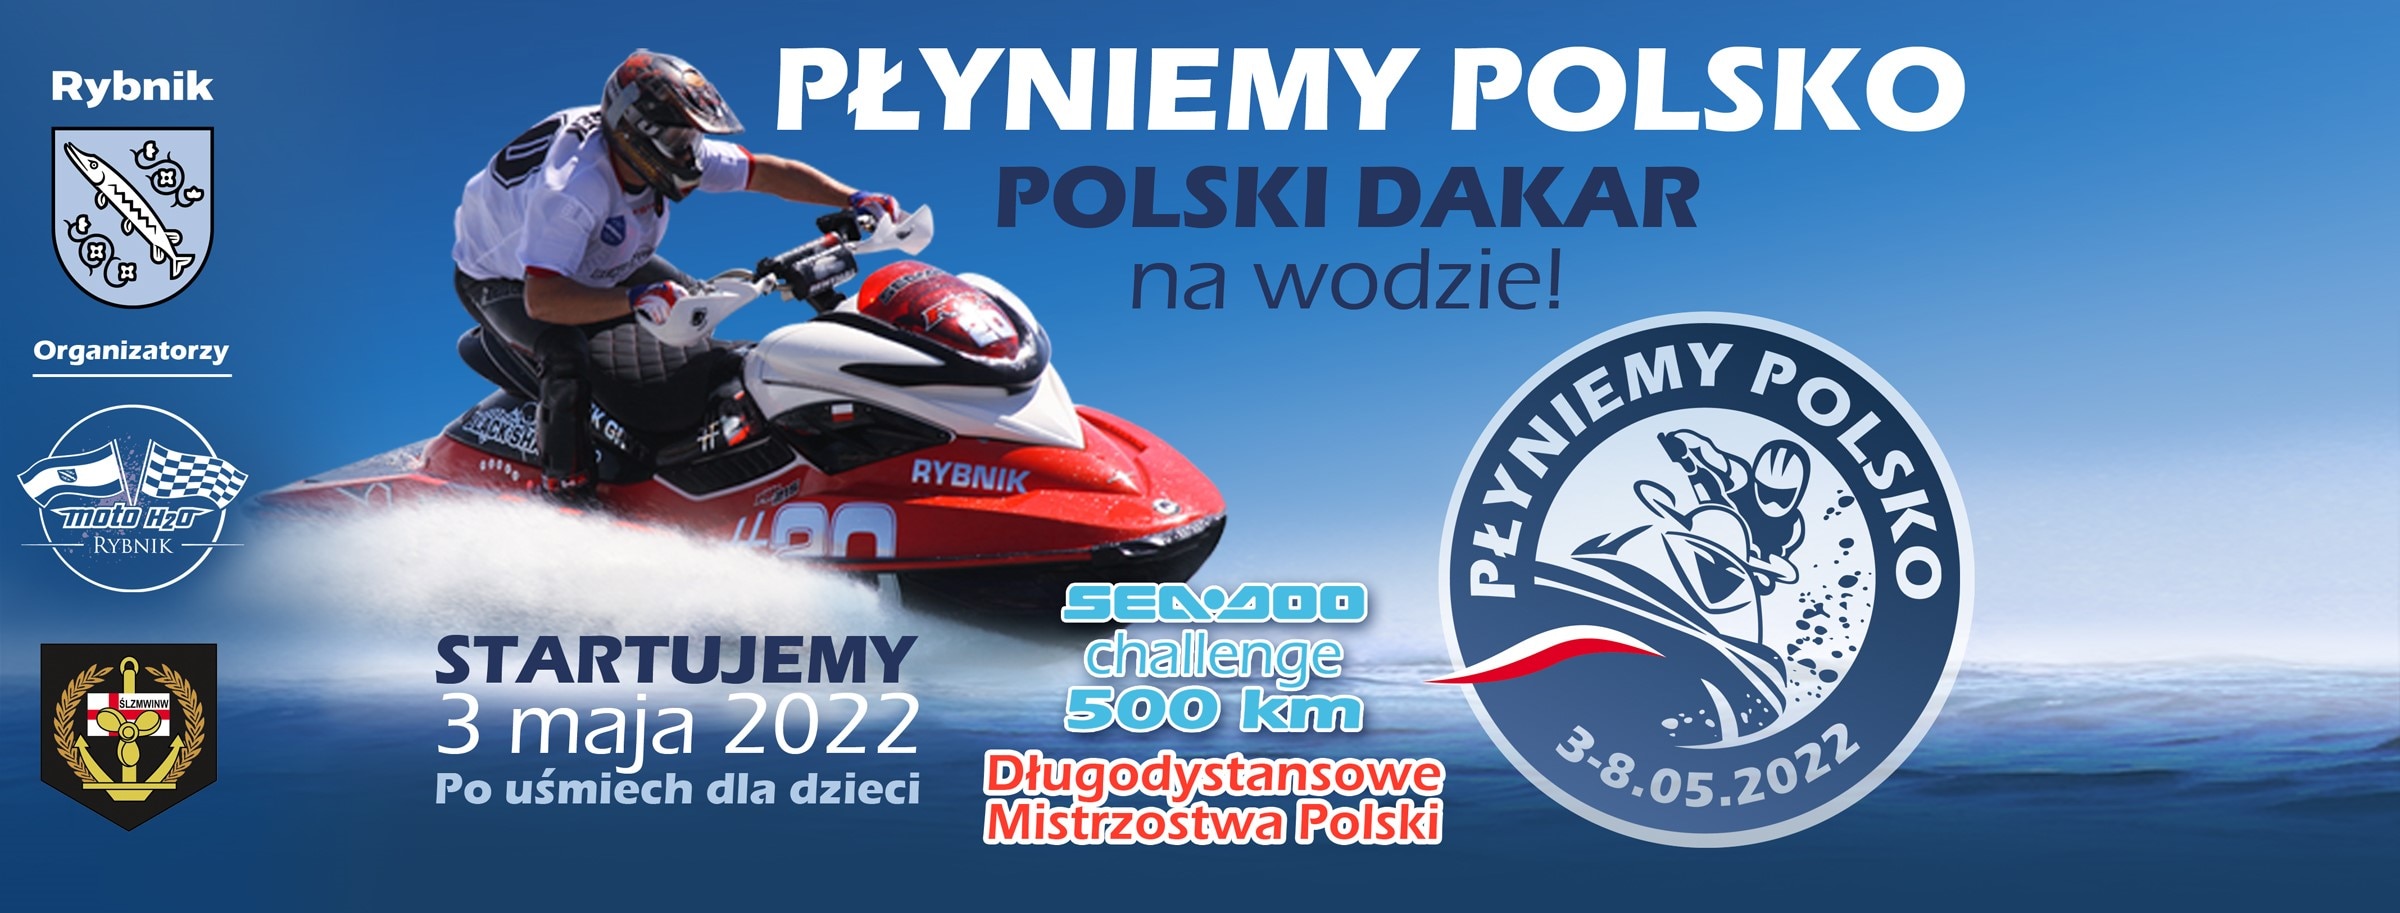 płyniemy polsko 2022 seadoo challenge